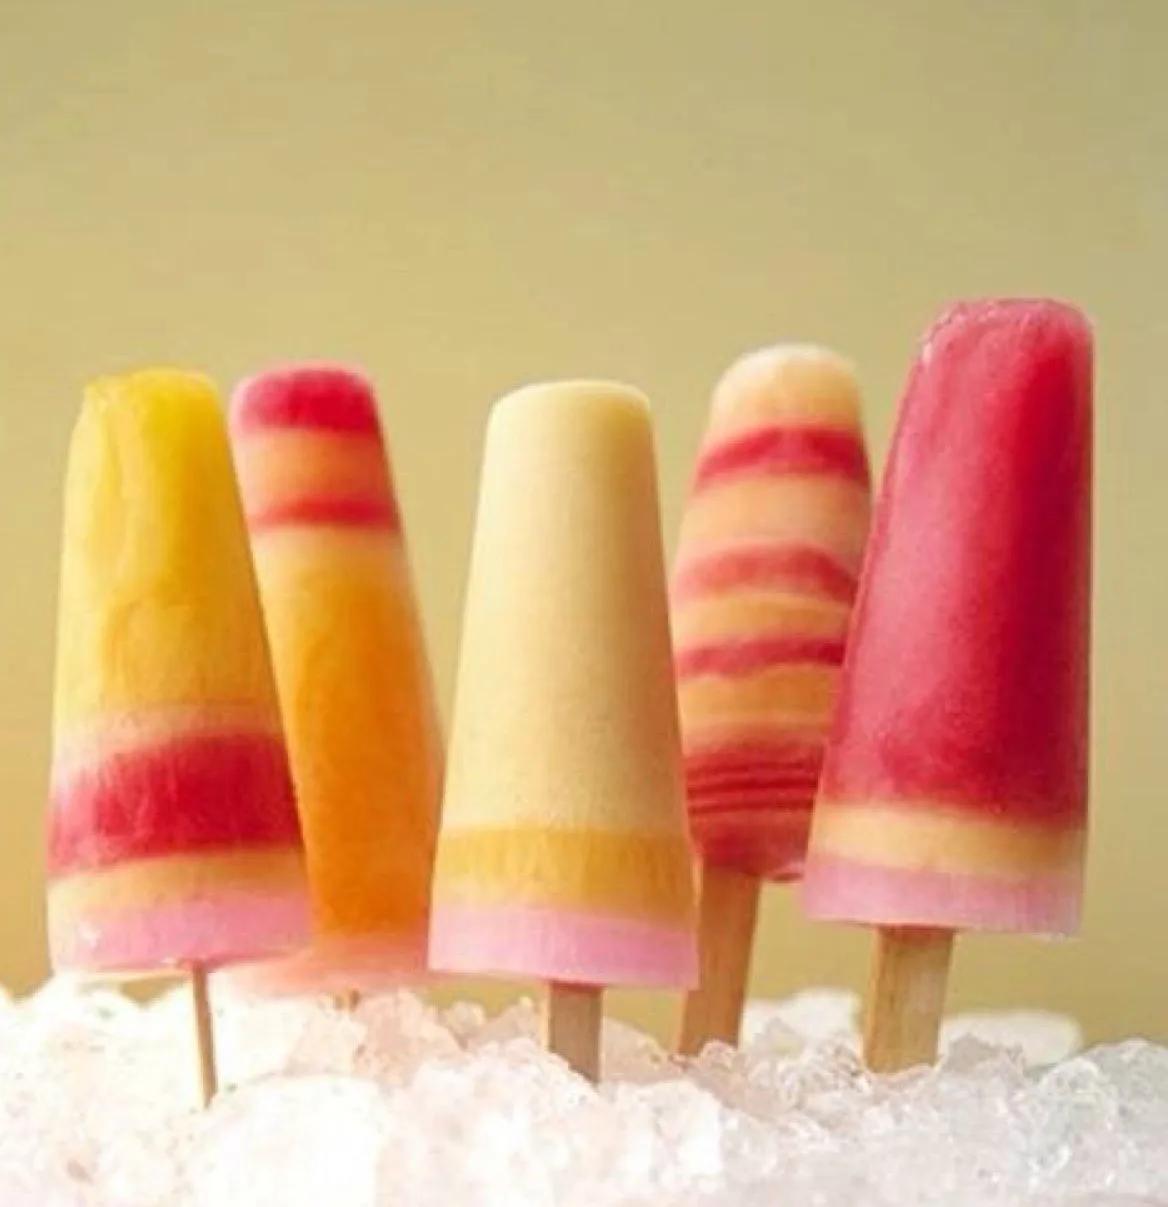 Фруктовый лед. Мороженое фруктовый лед. Домашнее фруктовое мороженое. Мороженое вкусняшка фруктовый лёд.